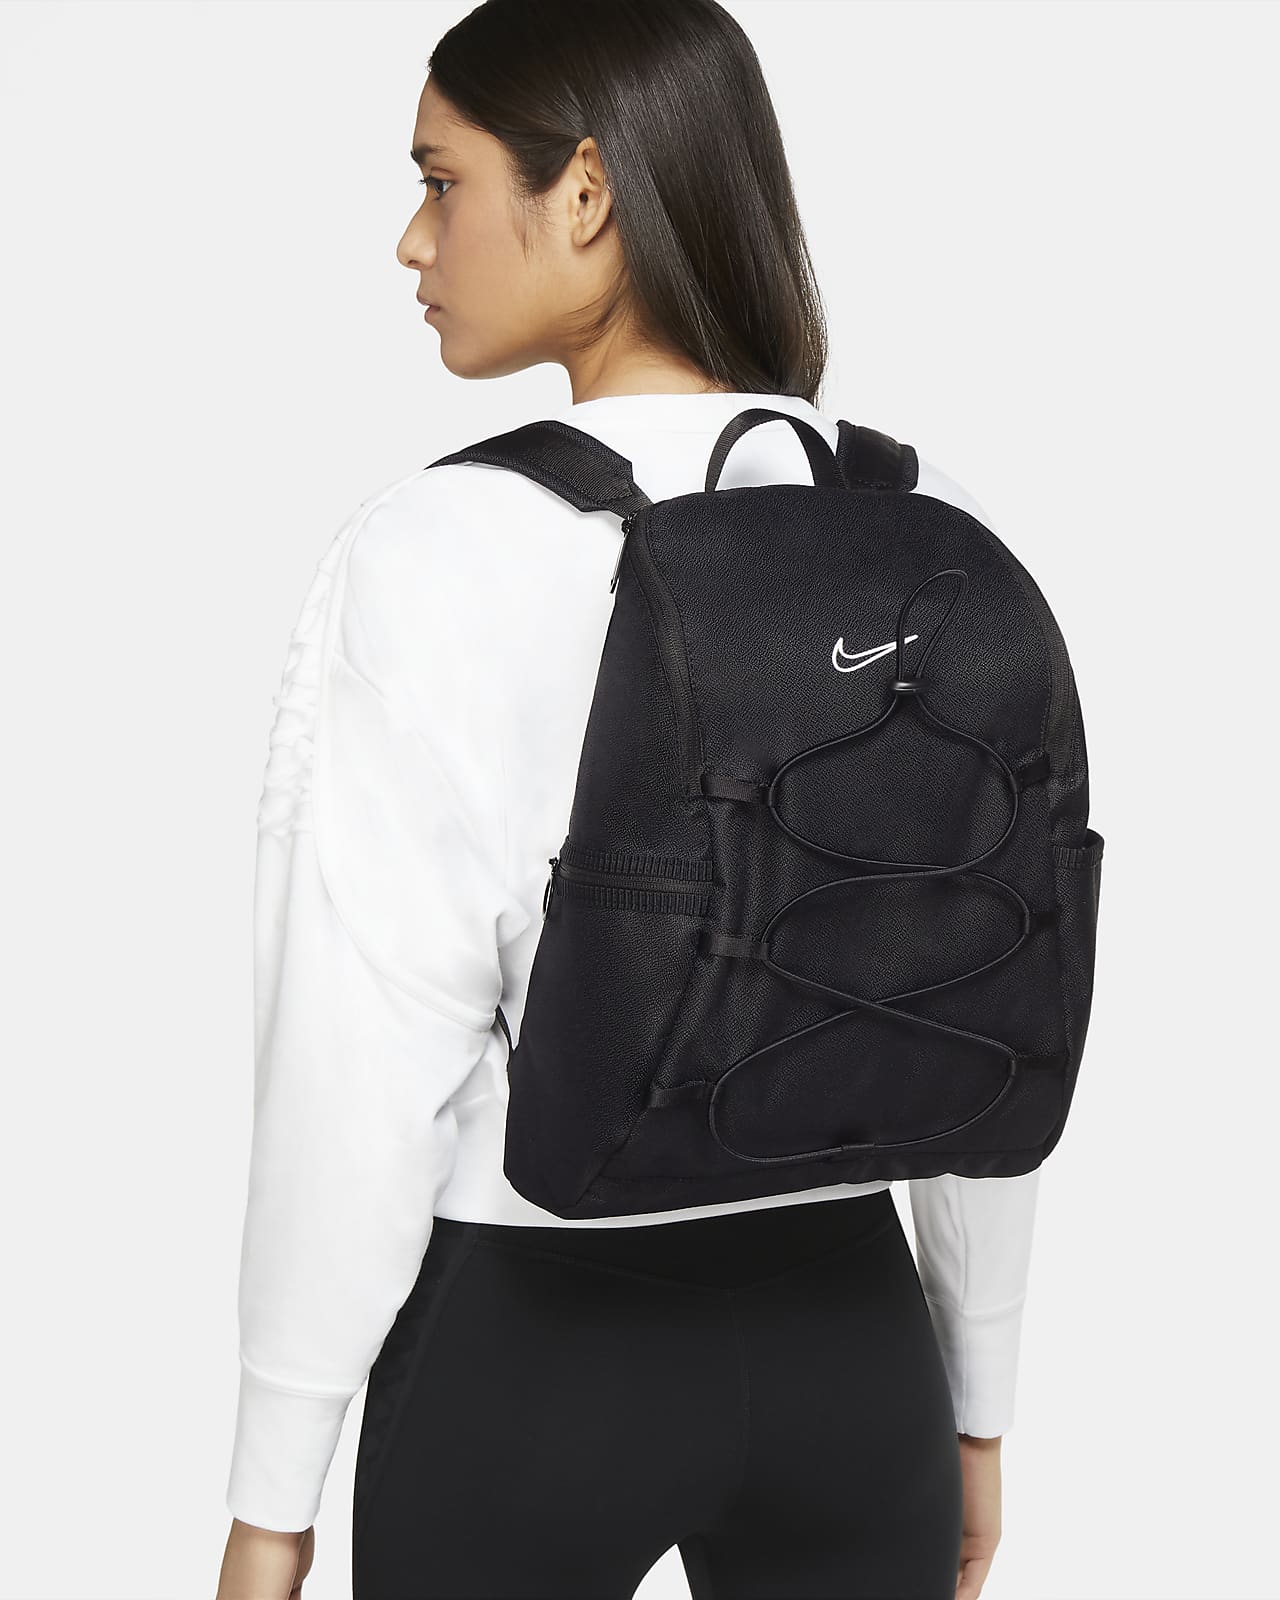 single strap backpack nike